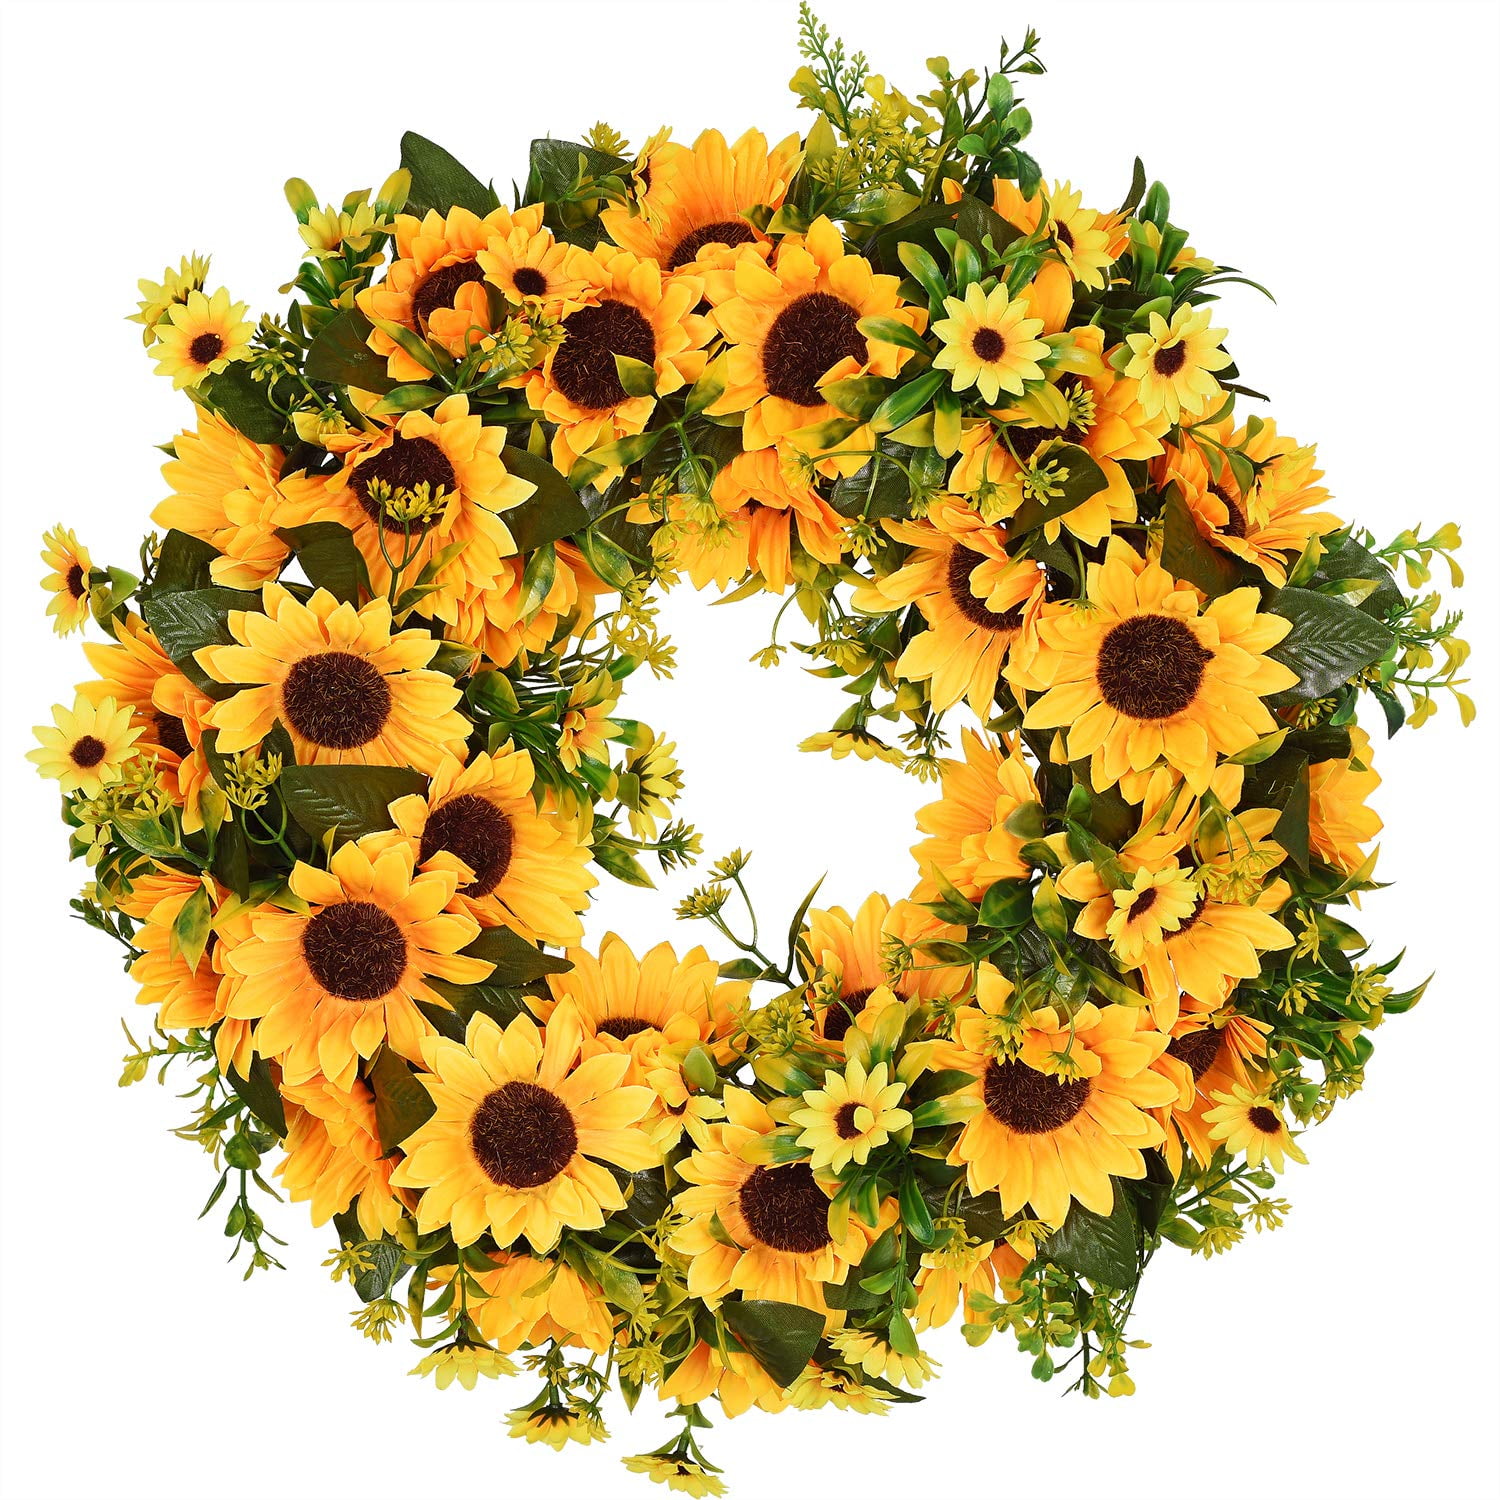 Yellow wreath,summer wreath,floral wreath,front door wreath,door decor,yellow flowers,unique wreath,rustic country chic,flower wreath,